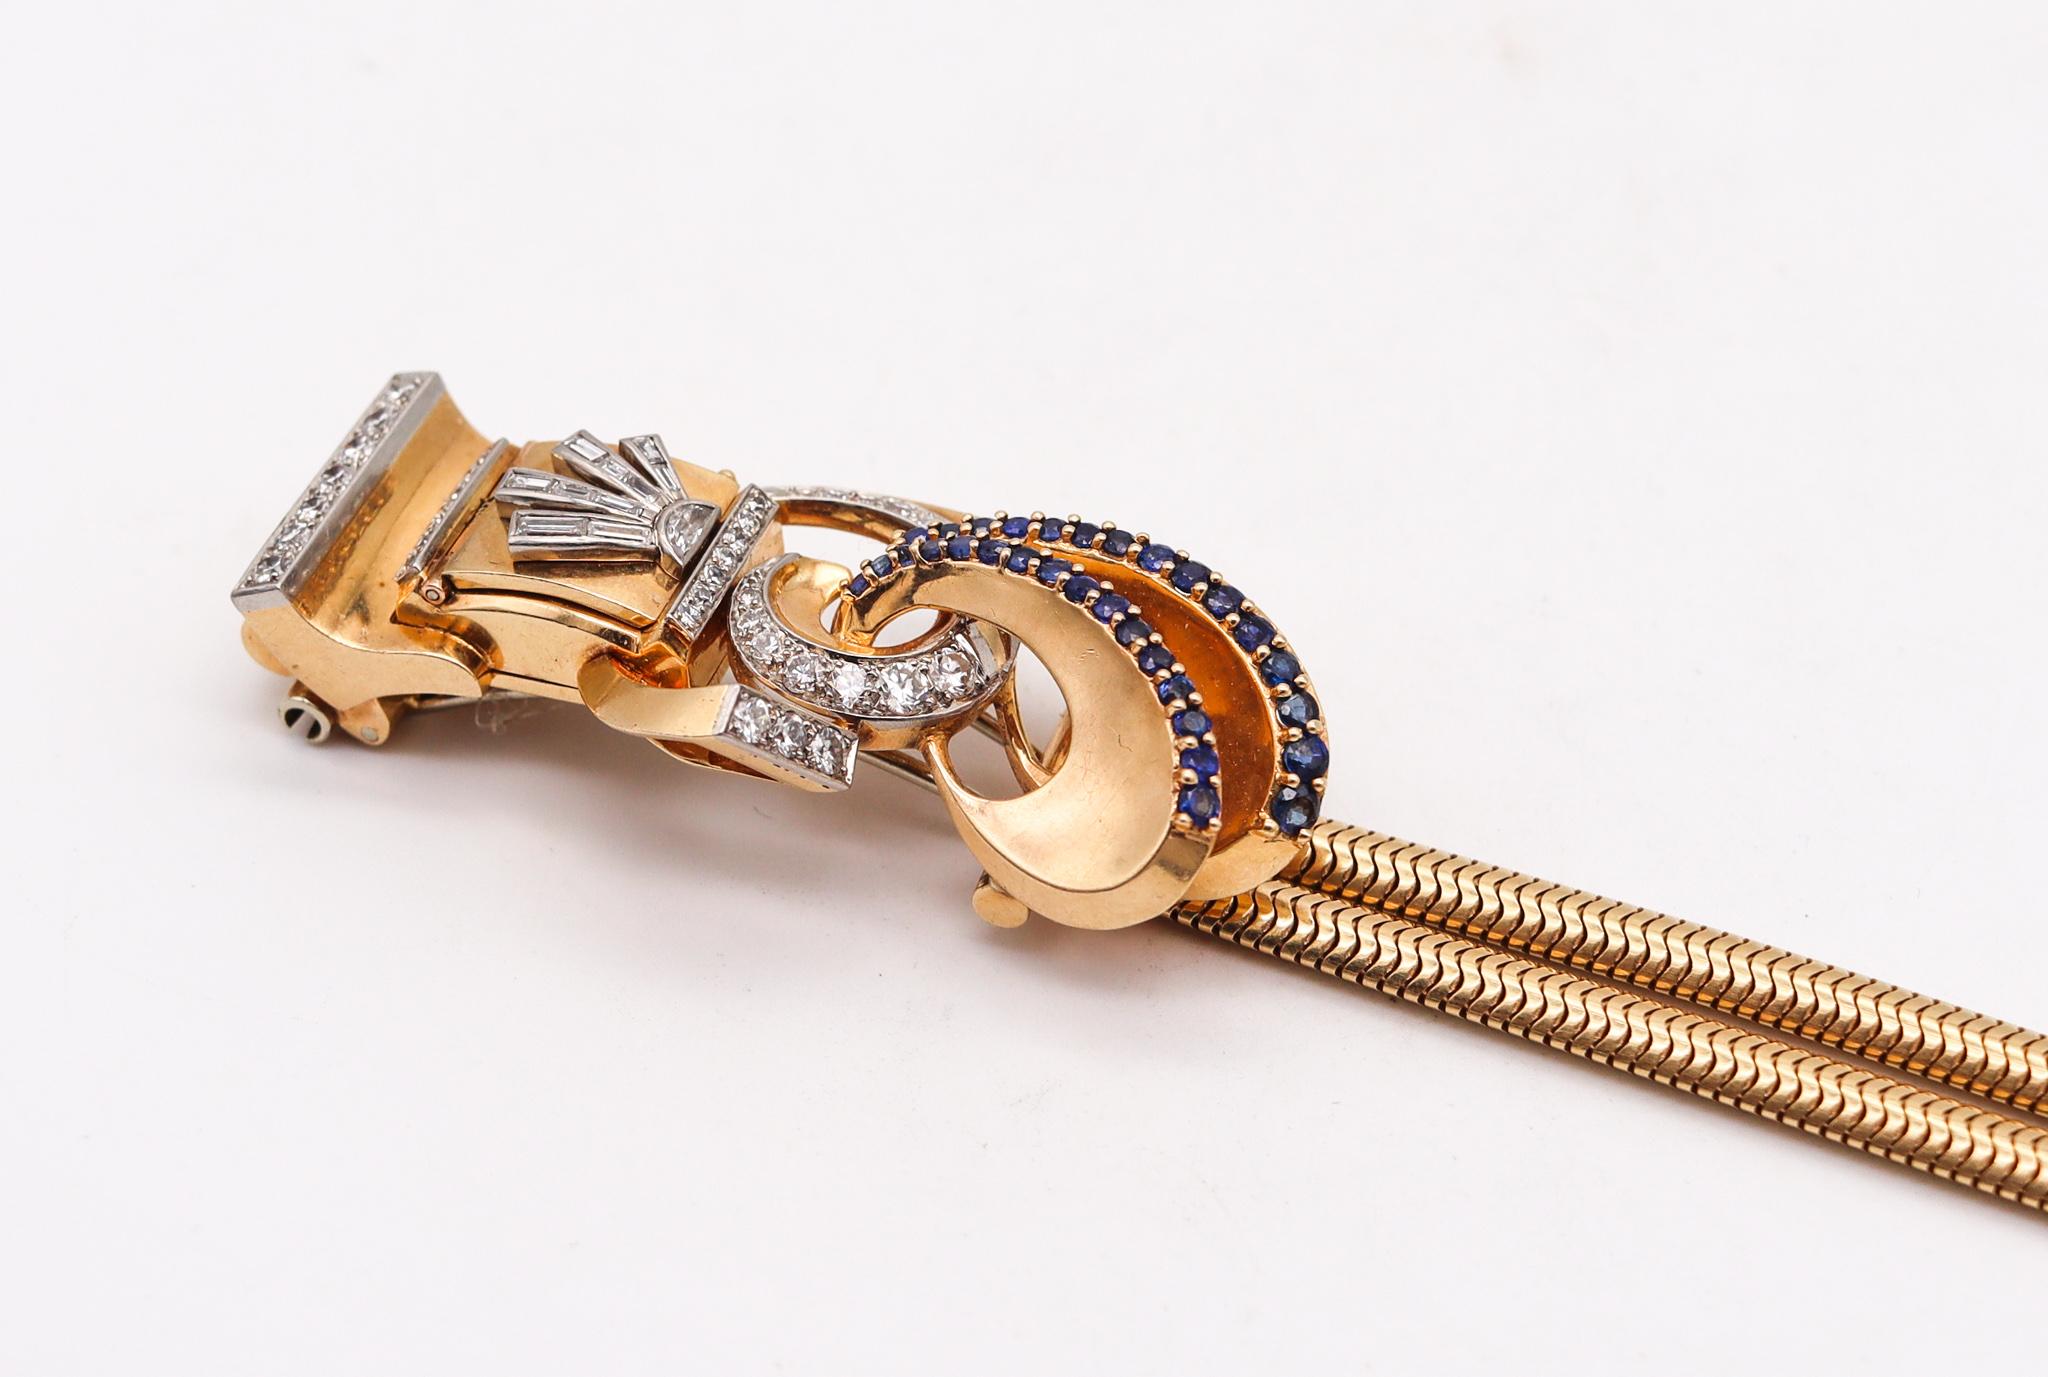 Art Deco Deco Retro 1940 Brooch Wristwatch 14kt Gold Platinum 5.54ctw Diamonds Sapphires For Sale